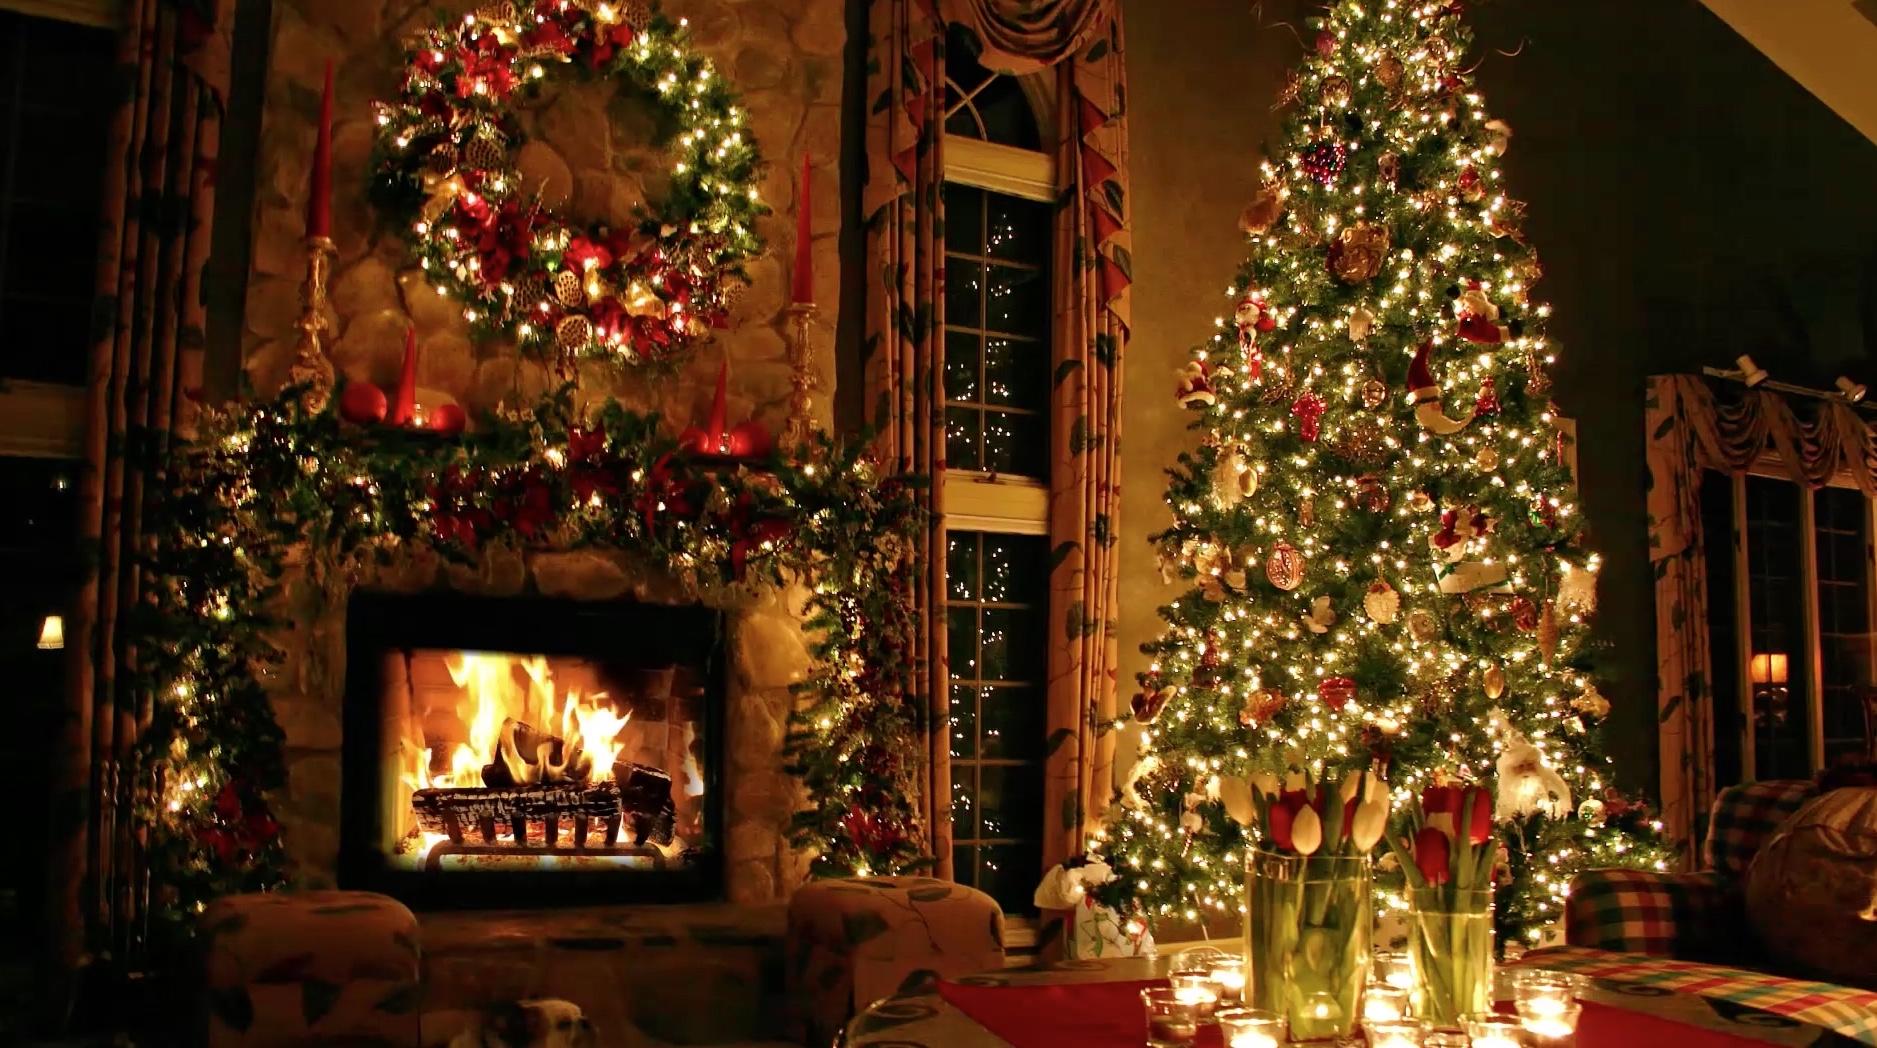 HDoboi.Kiev.ua - Christmas-Tree-and-Fireplace